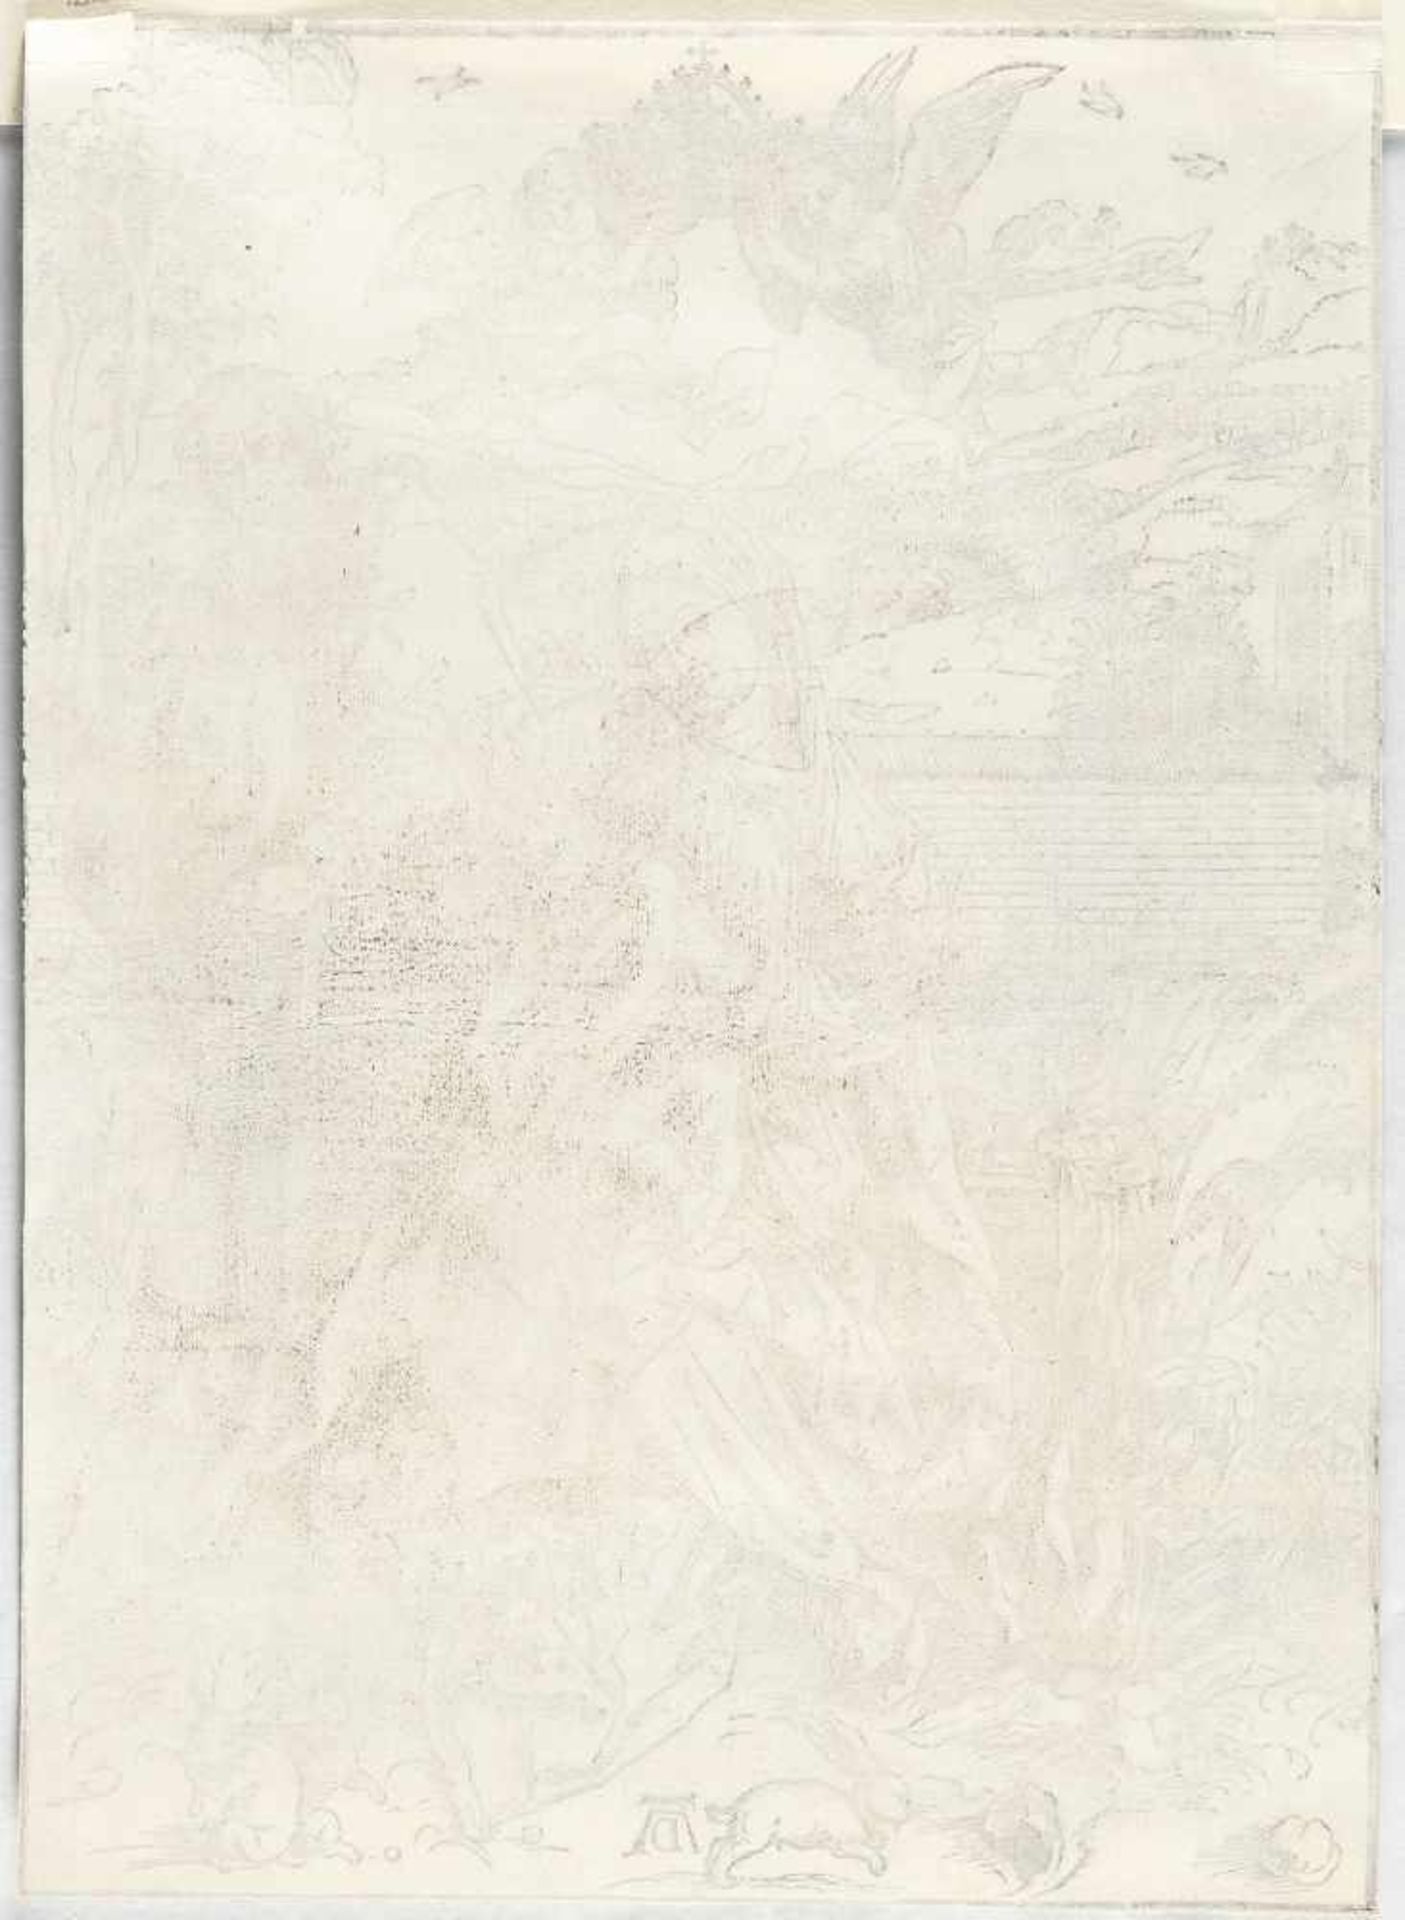 Albrecht Dürer - Image 3 of 3